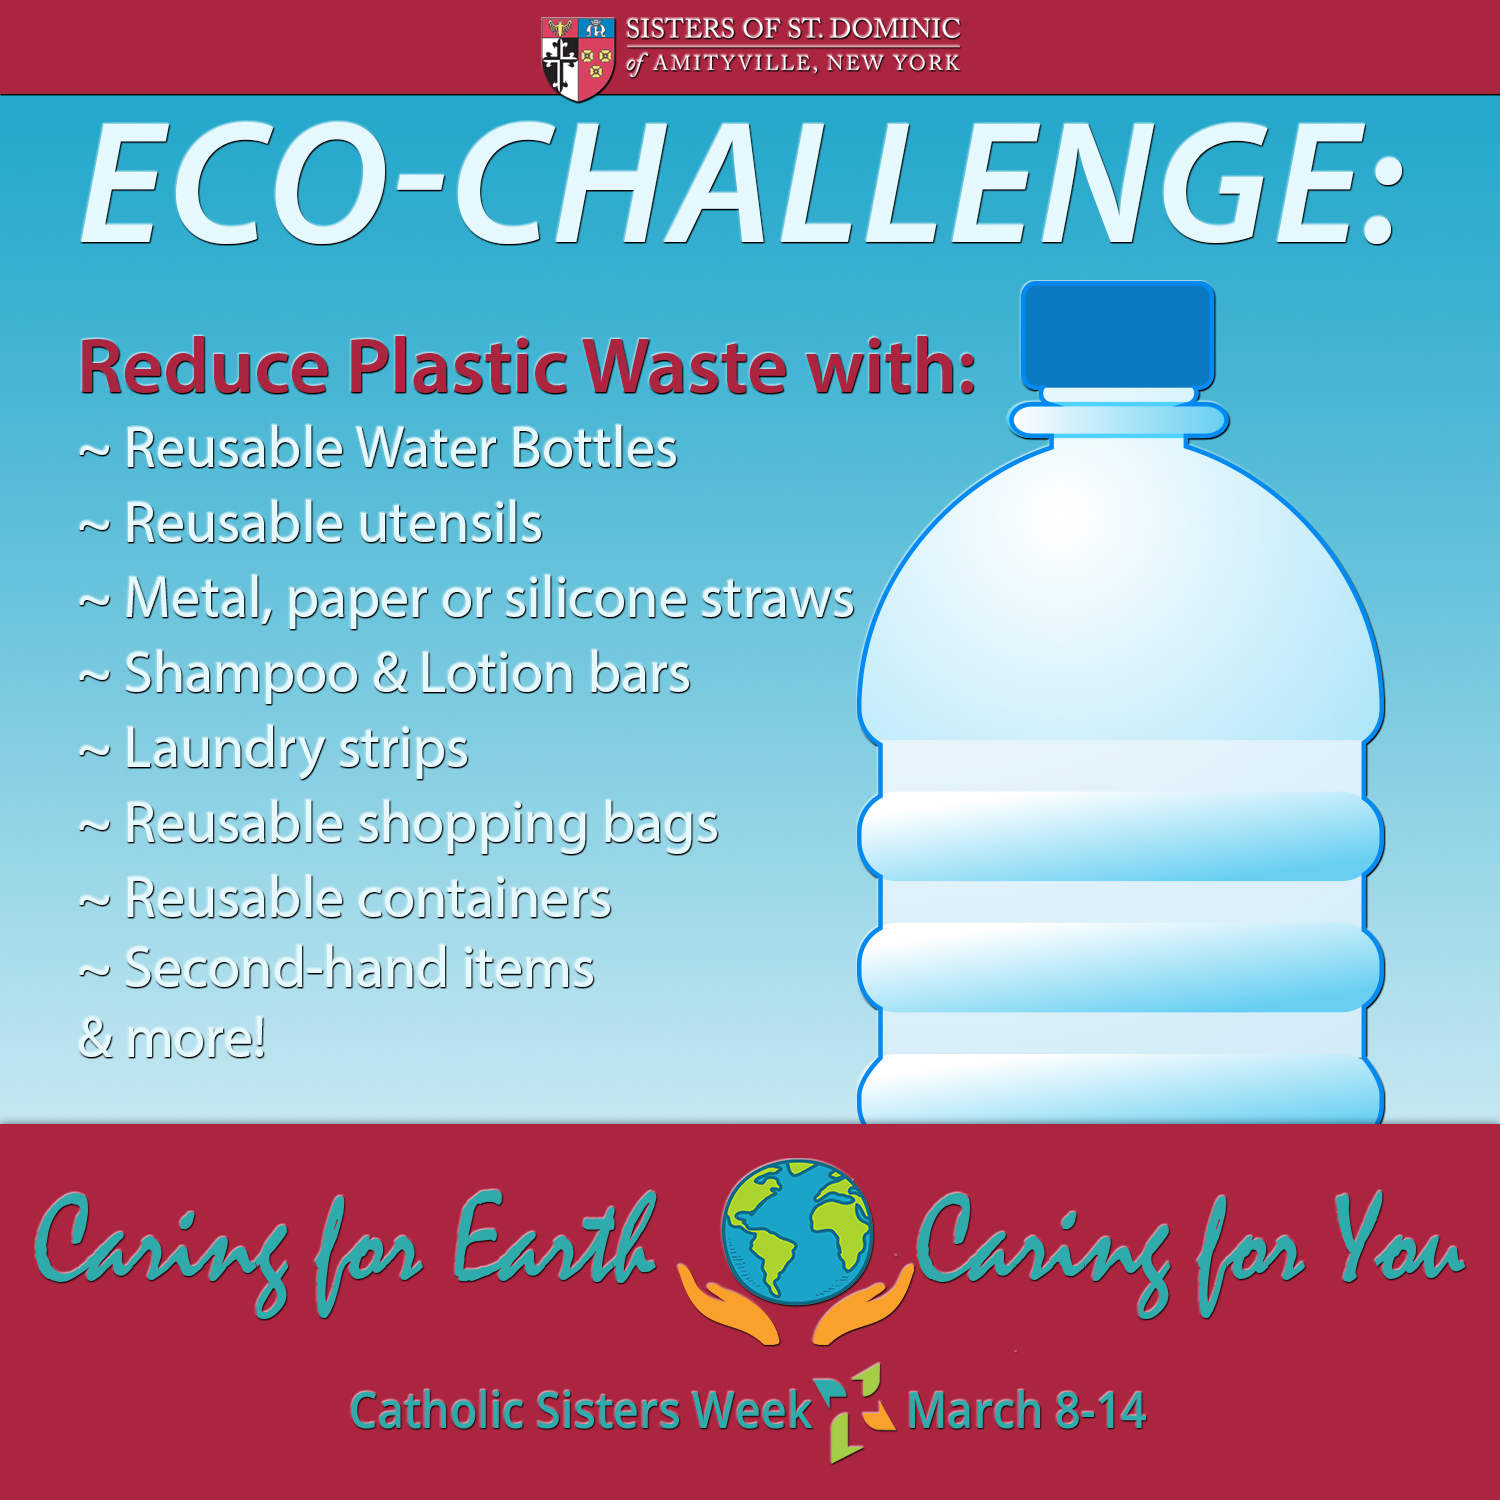 Ecochallenge: Reduce Plastic Waste | Catholic Sisters Week